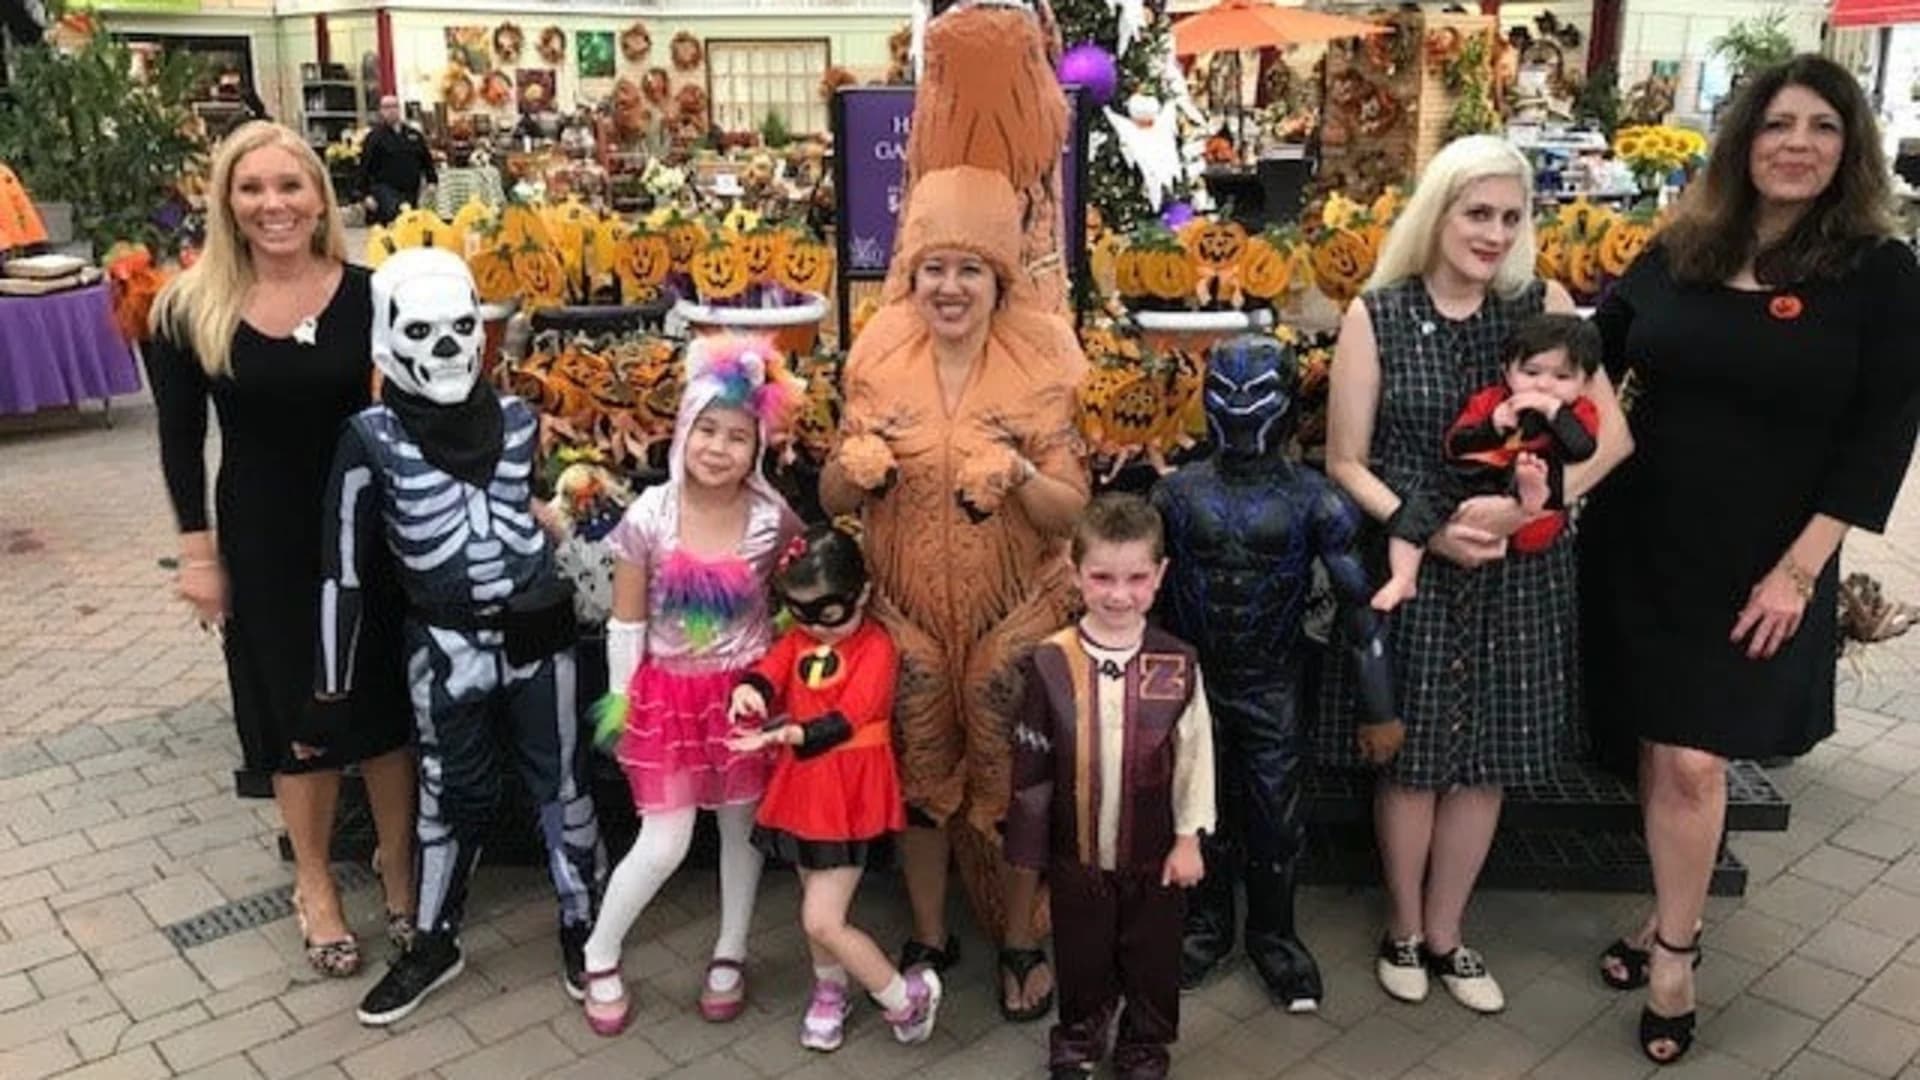 Halloween costumes for children in 2018